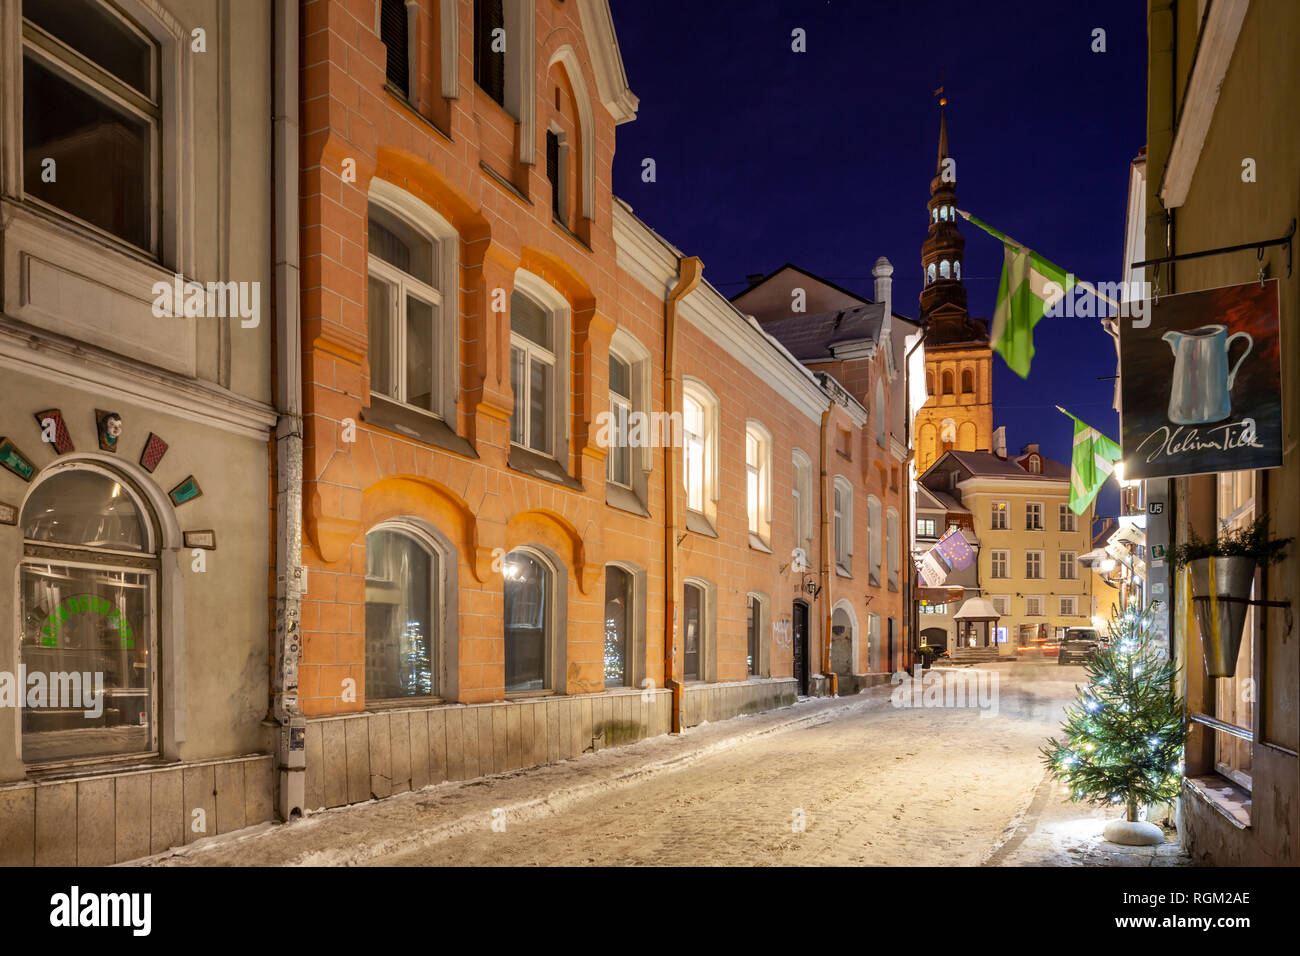 Nuit d'hiver dans la vieille ville de Tallinn, Estonie. Banque D'Images